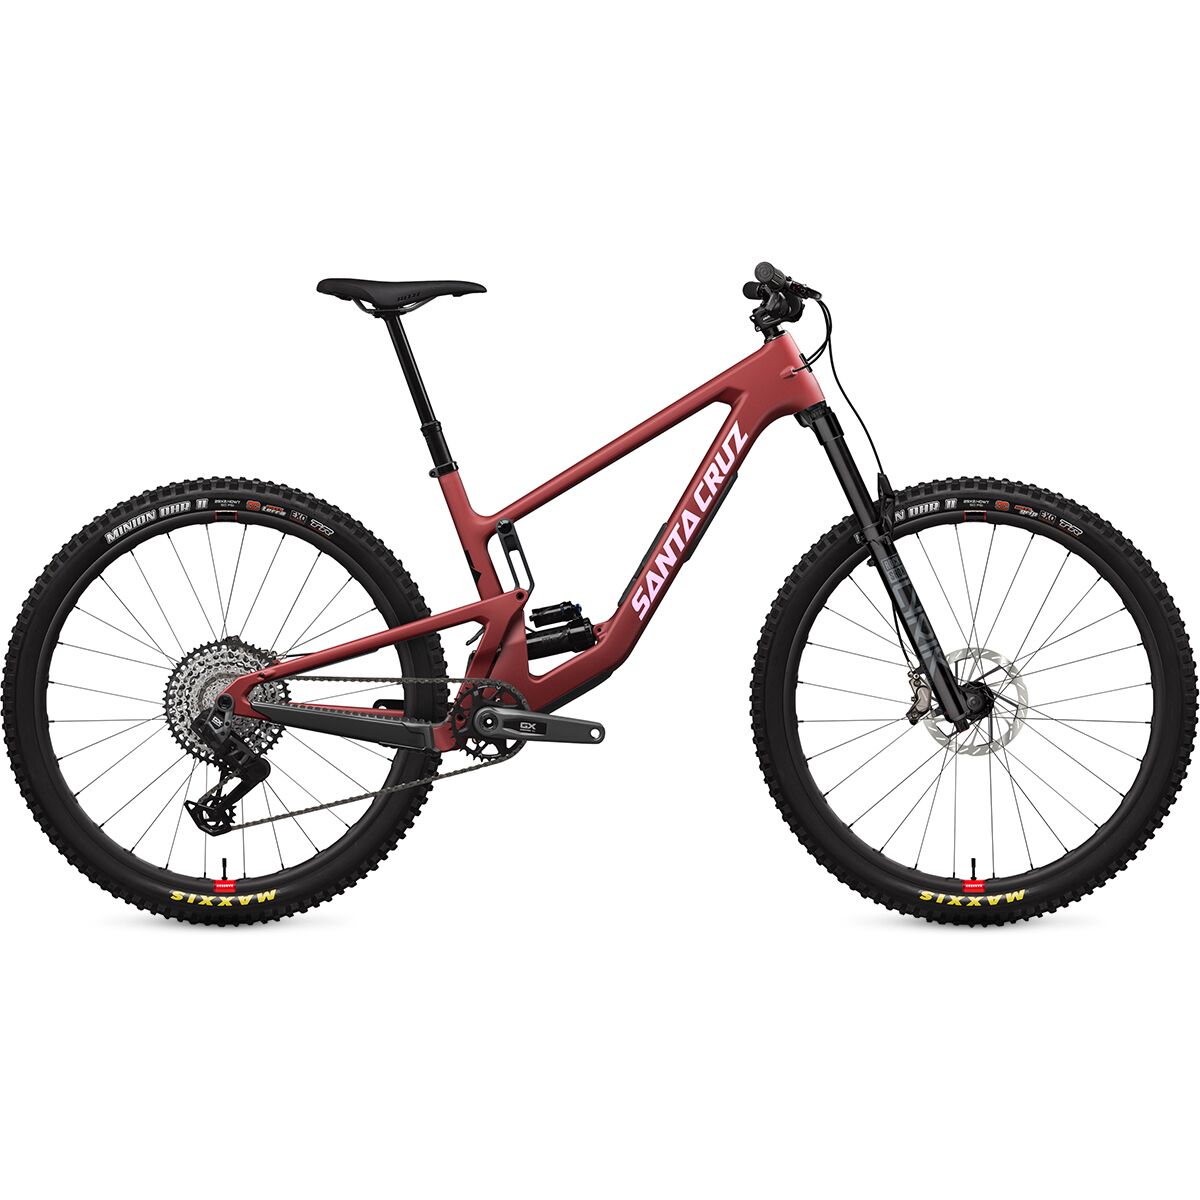 Santa Cruz Bicycles Hightower C GX Eagle Transmission Reserve Mountain Bike Matte Cardinal Red, M